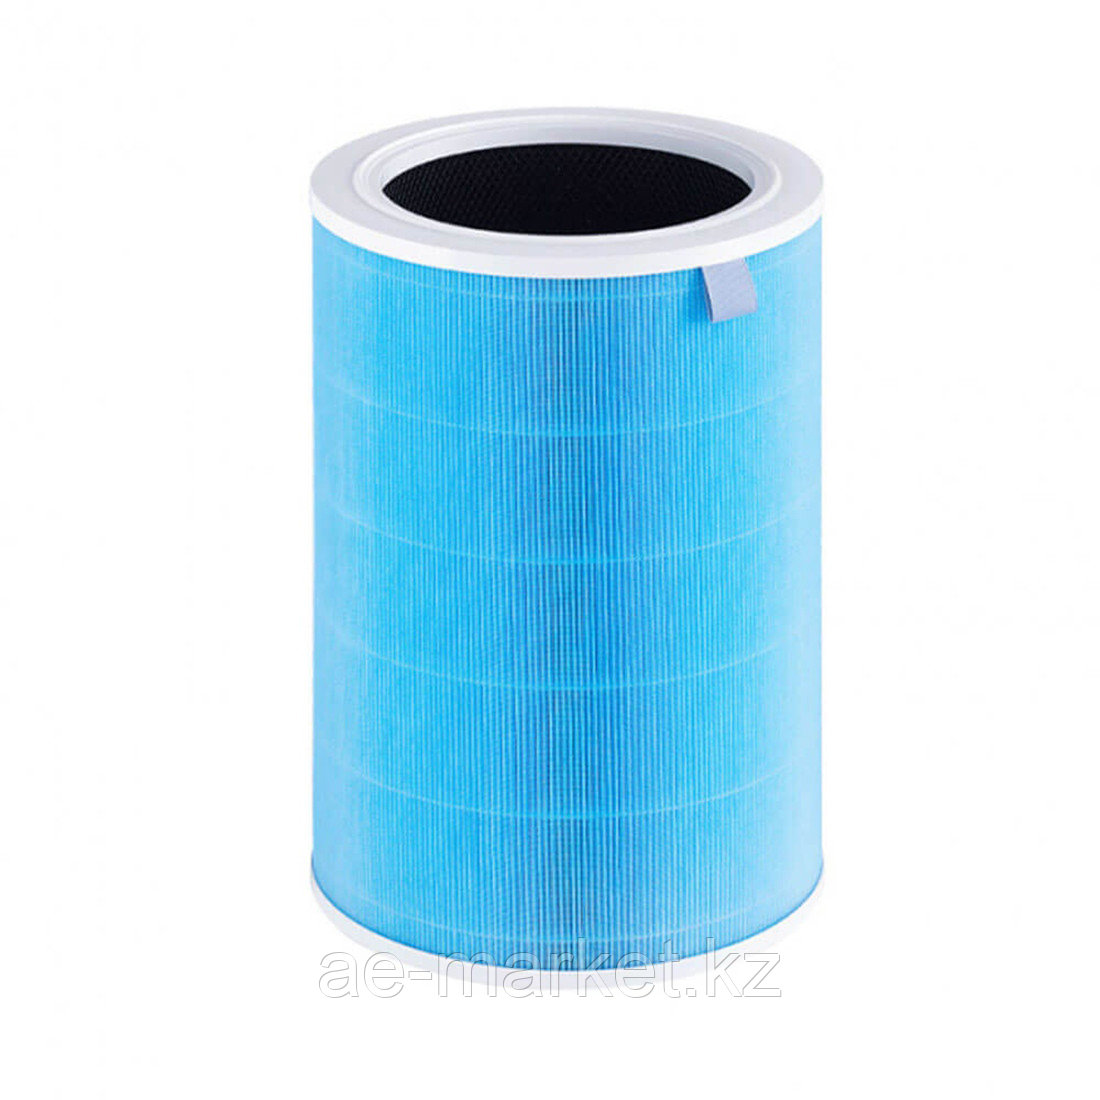 Воздушный фильтр для очистителя воздуха Mi Air Purifier Pro H Синий, фото 1